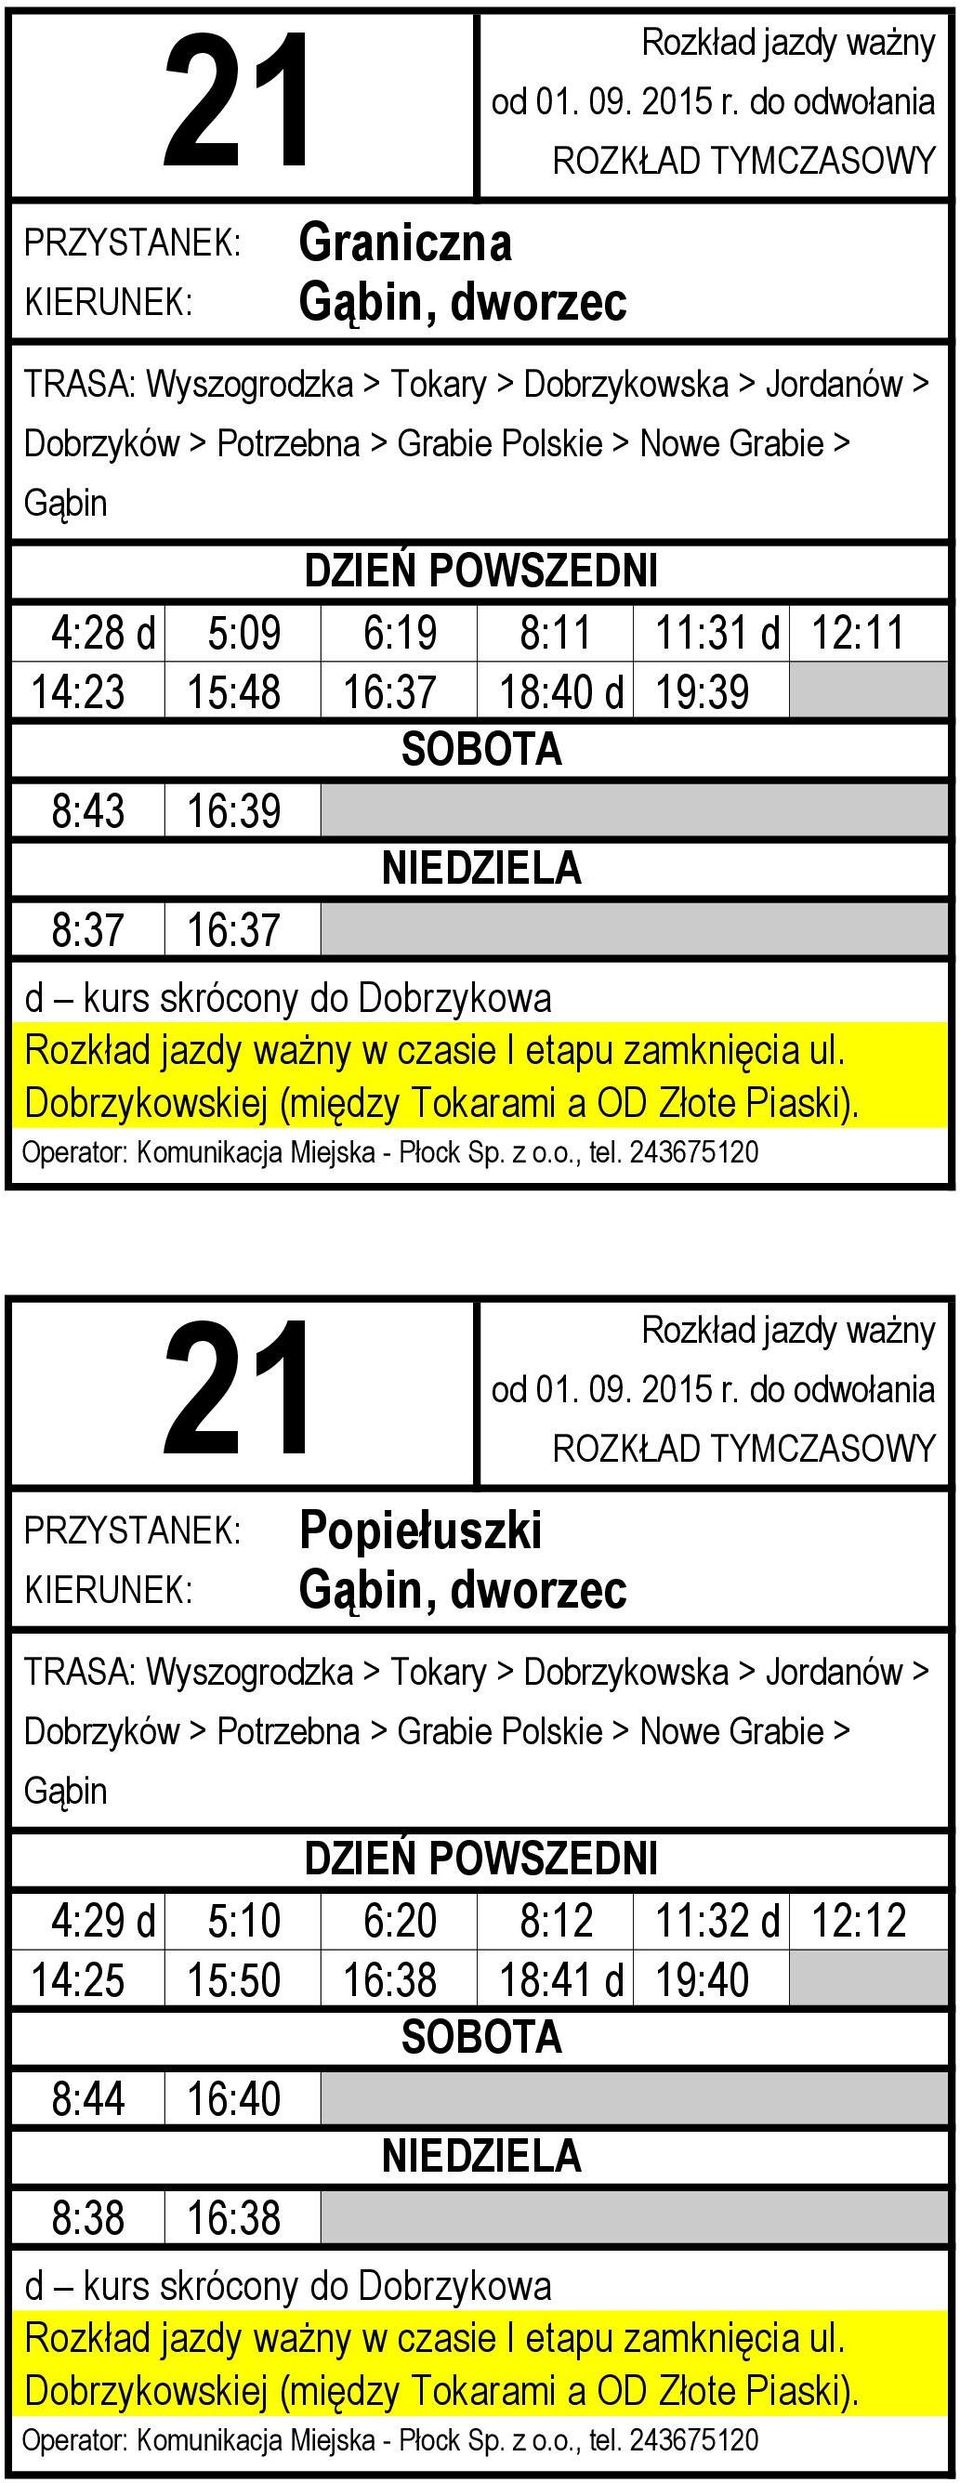 Popiełuszki TRASA: Wyszogrodzka > Tokary > Dobrzykowska > Jordanów > Dobrzyków > Potrzebna > Grabie Polskie >